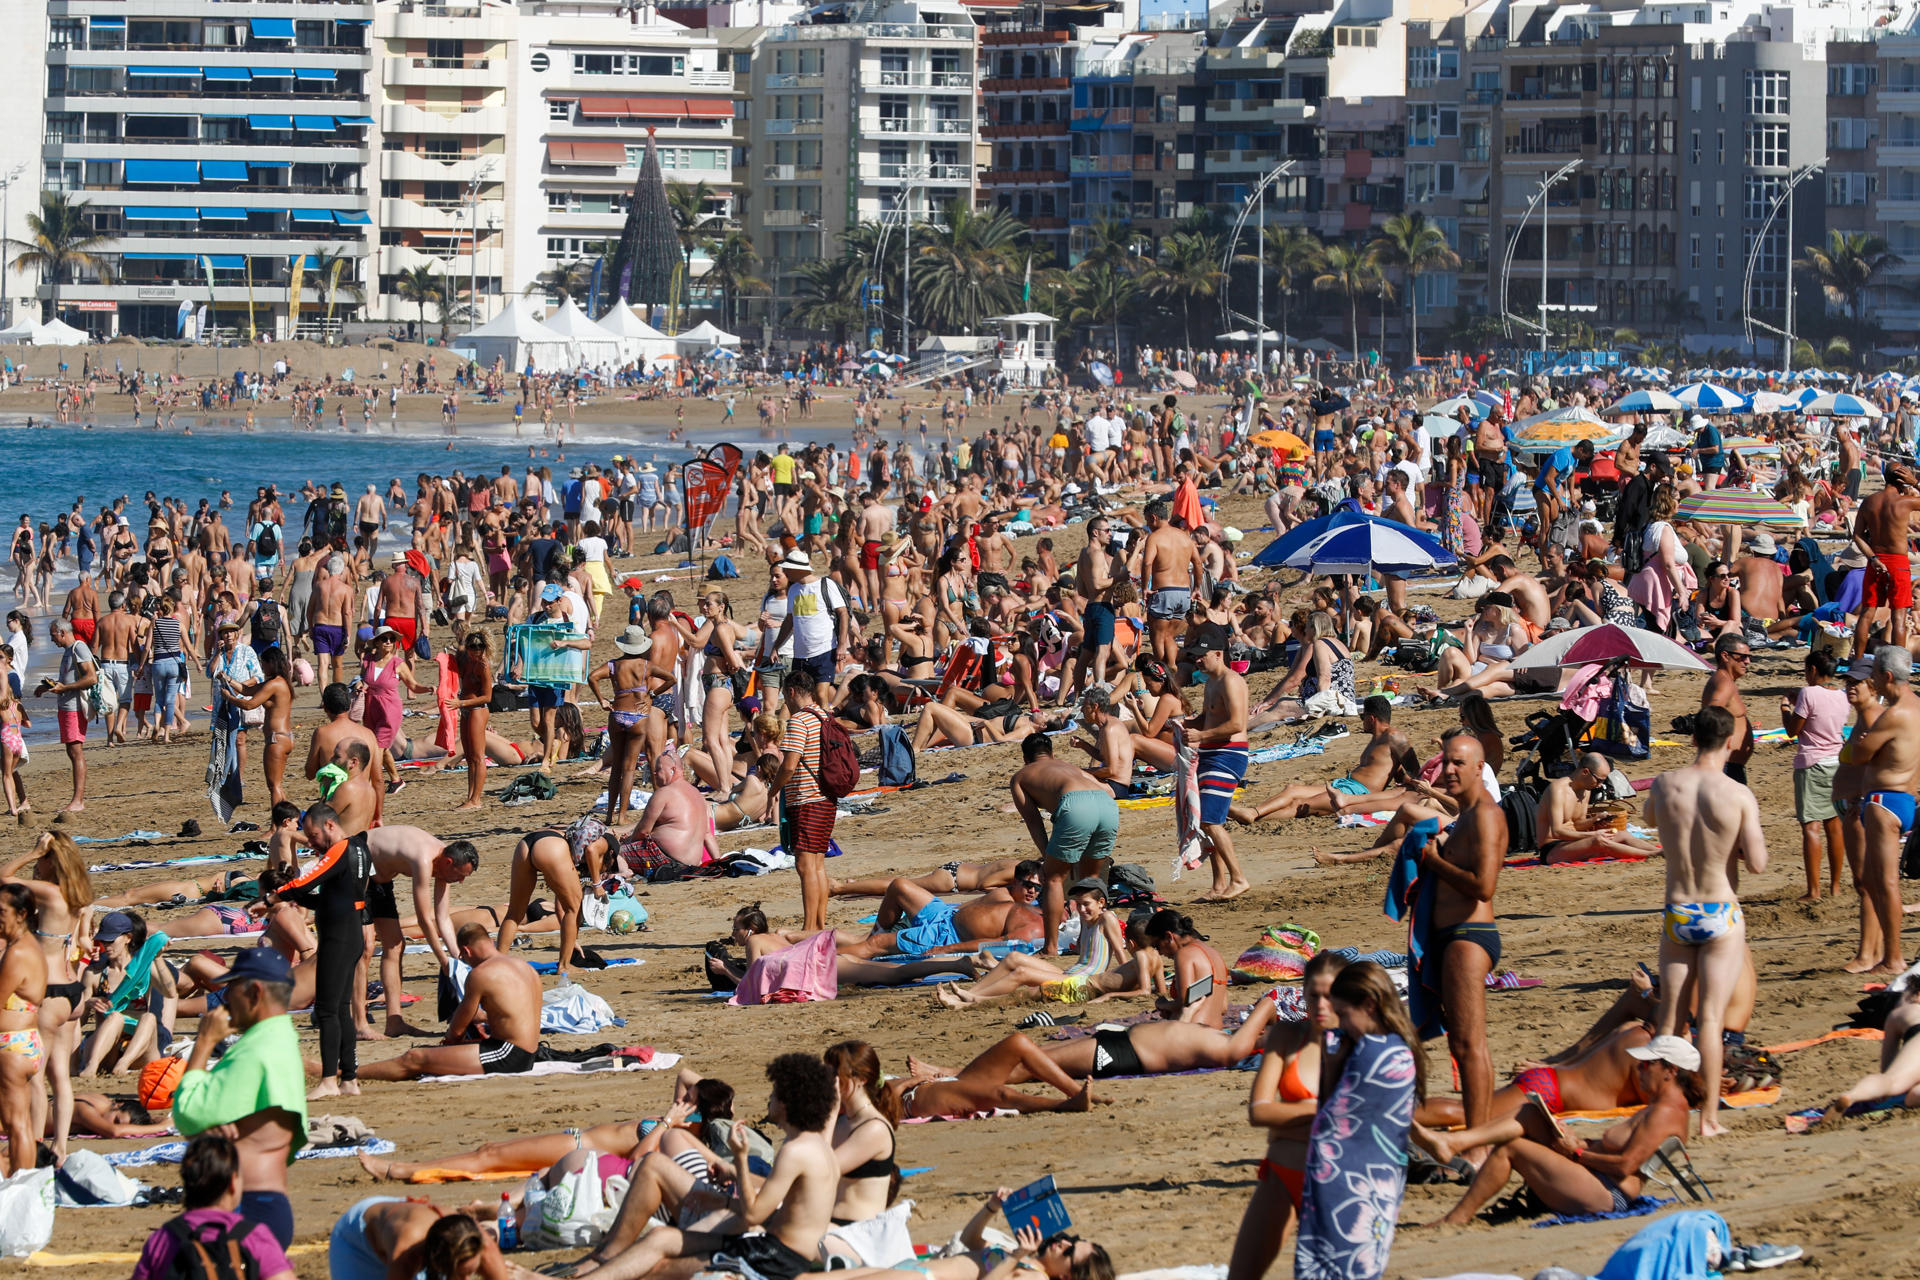 Numerosas personas aprovechan el buen tiempo, con sol y excelentes temperaturas en torno a 26 grados centígrados, para pasar el día de Navidad en la playa de Las Canteras de Las Palmas de Gran Canaria. EFE/ Elvira Urquijo A.